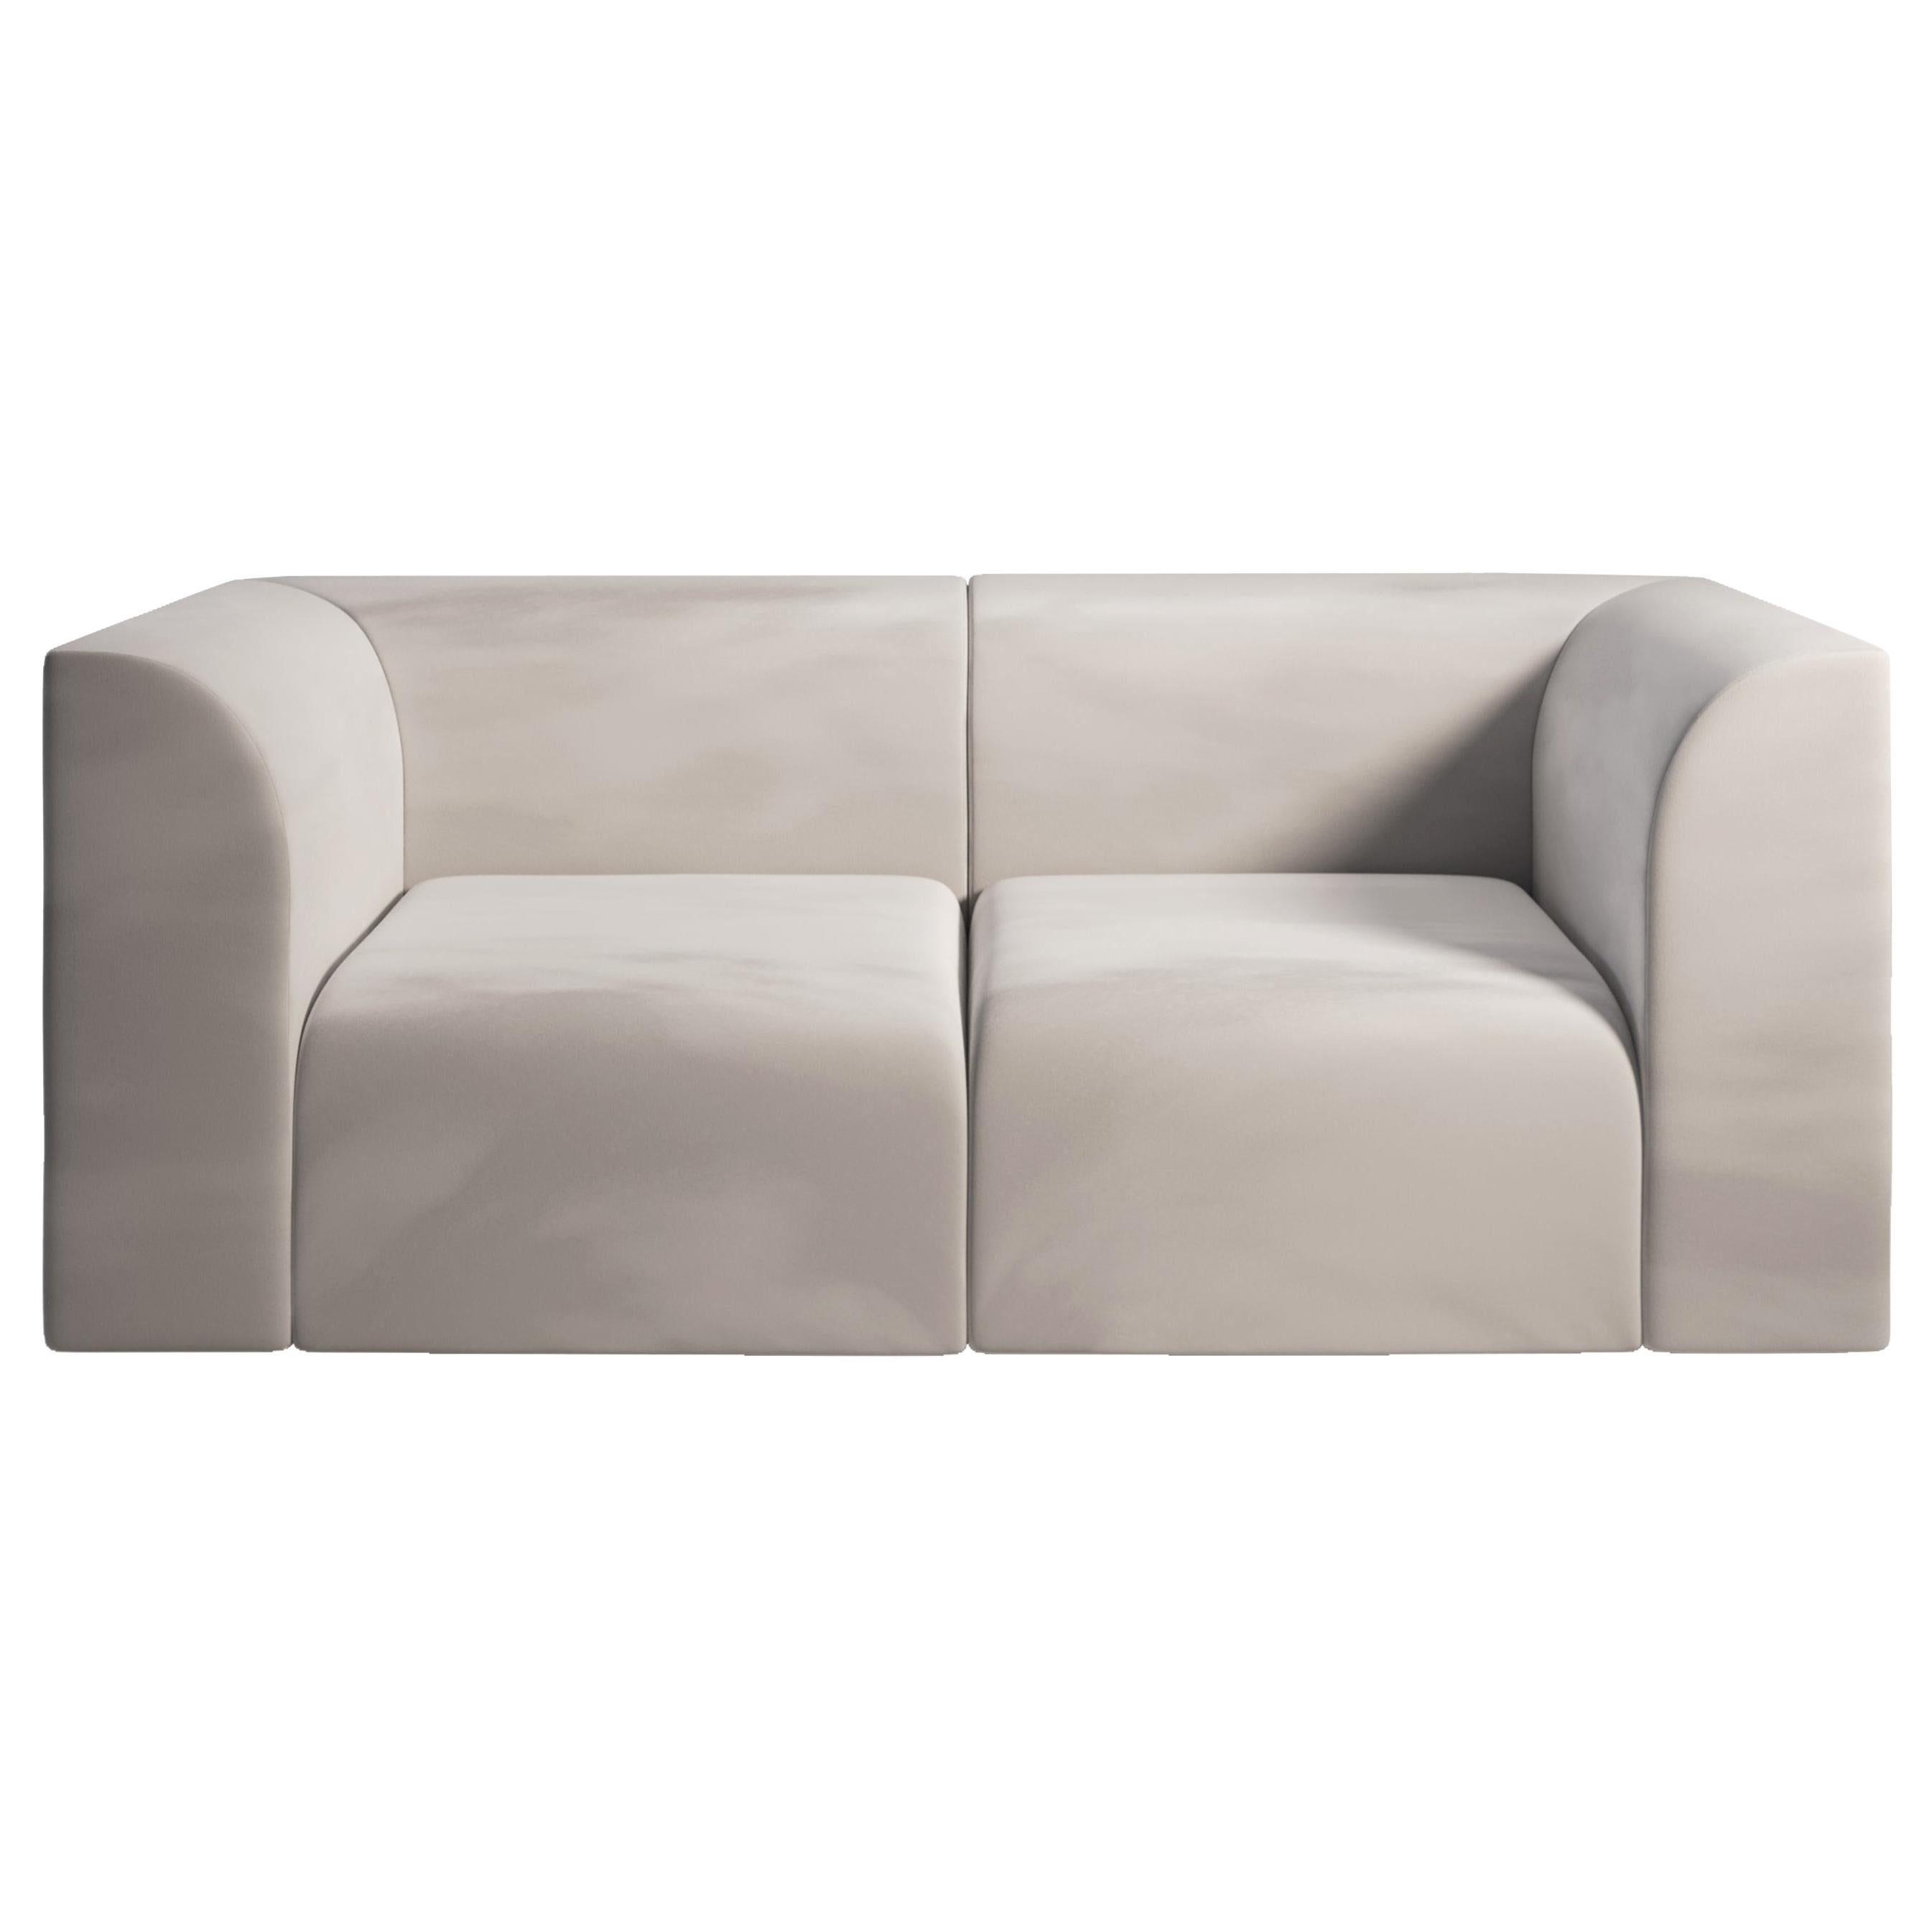 ARCHI 2 Seater Contemporary Sofa in Fabric